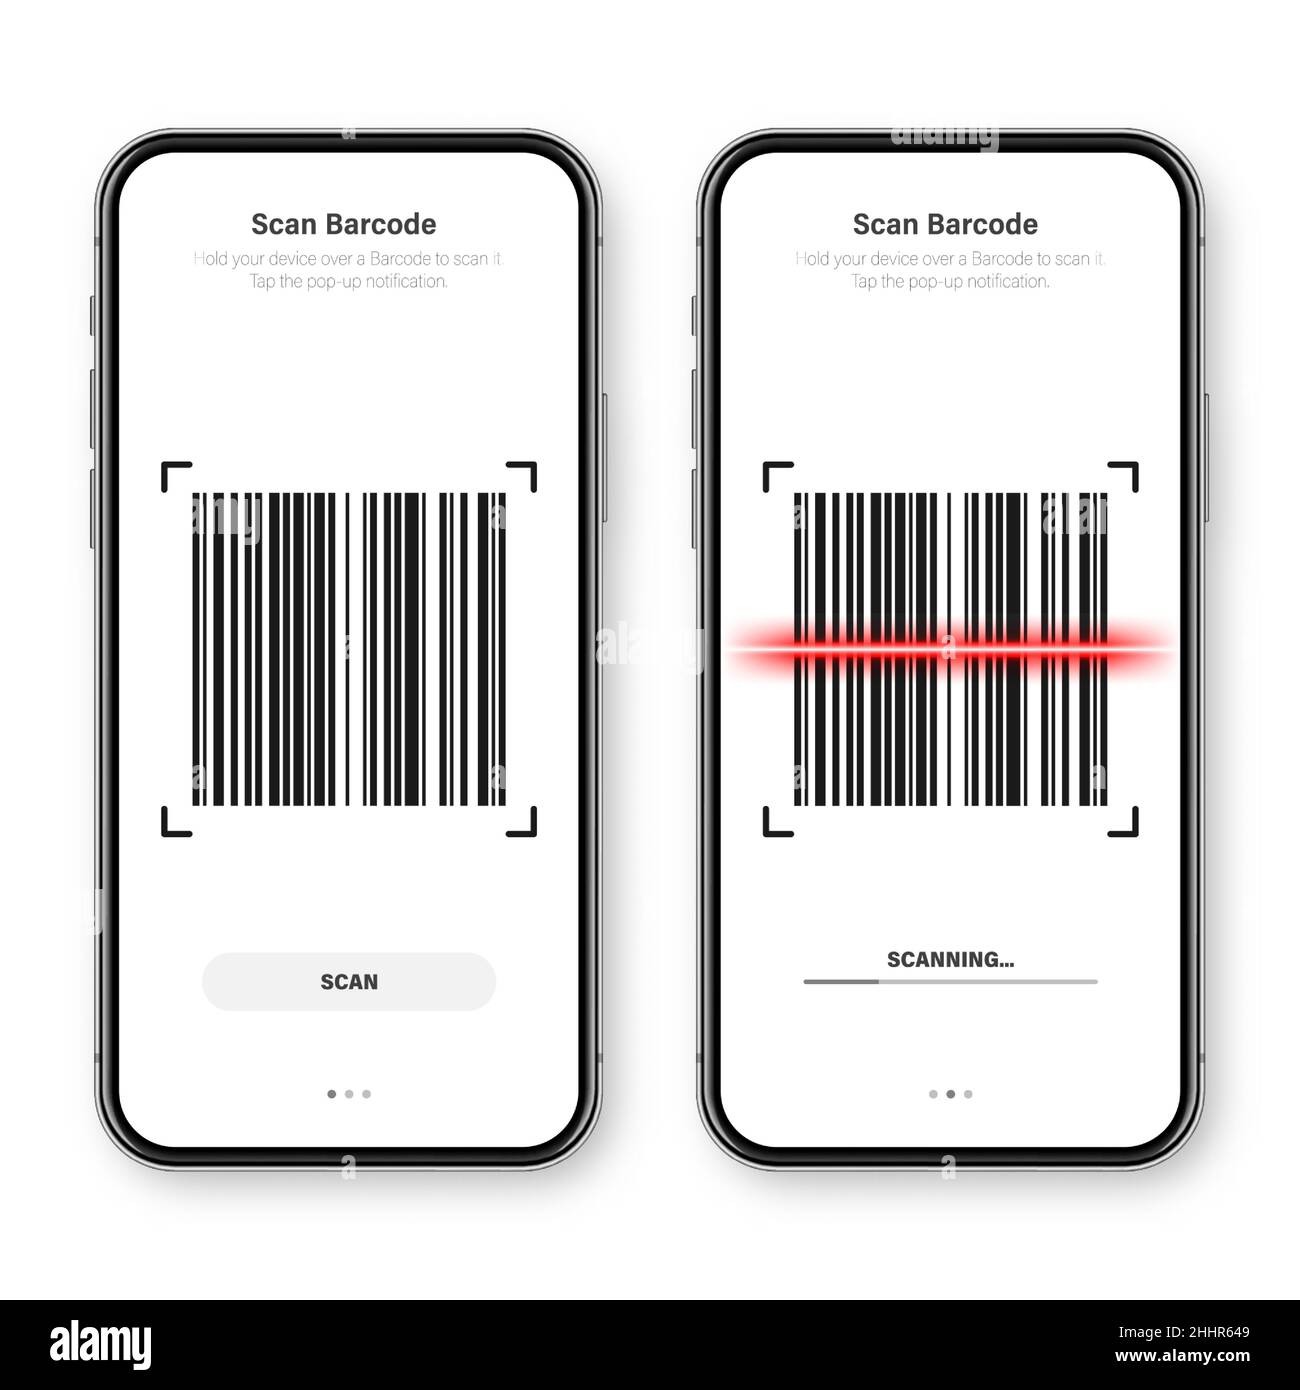 Barcode-Scanner, Reader-App für Smartphone. Identifizierungscode.  Seriennummer, Produkt-ID mit digitalen Informationen. Geschäft, Supermarkt- Scan Stock-Vektorgrafik - Alamy